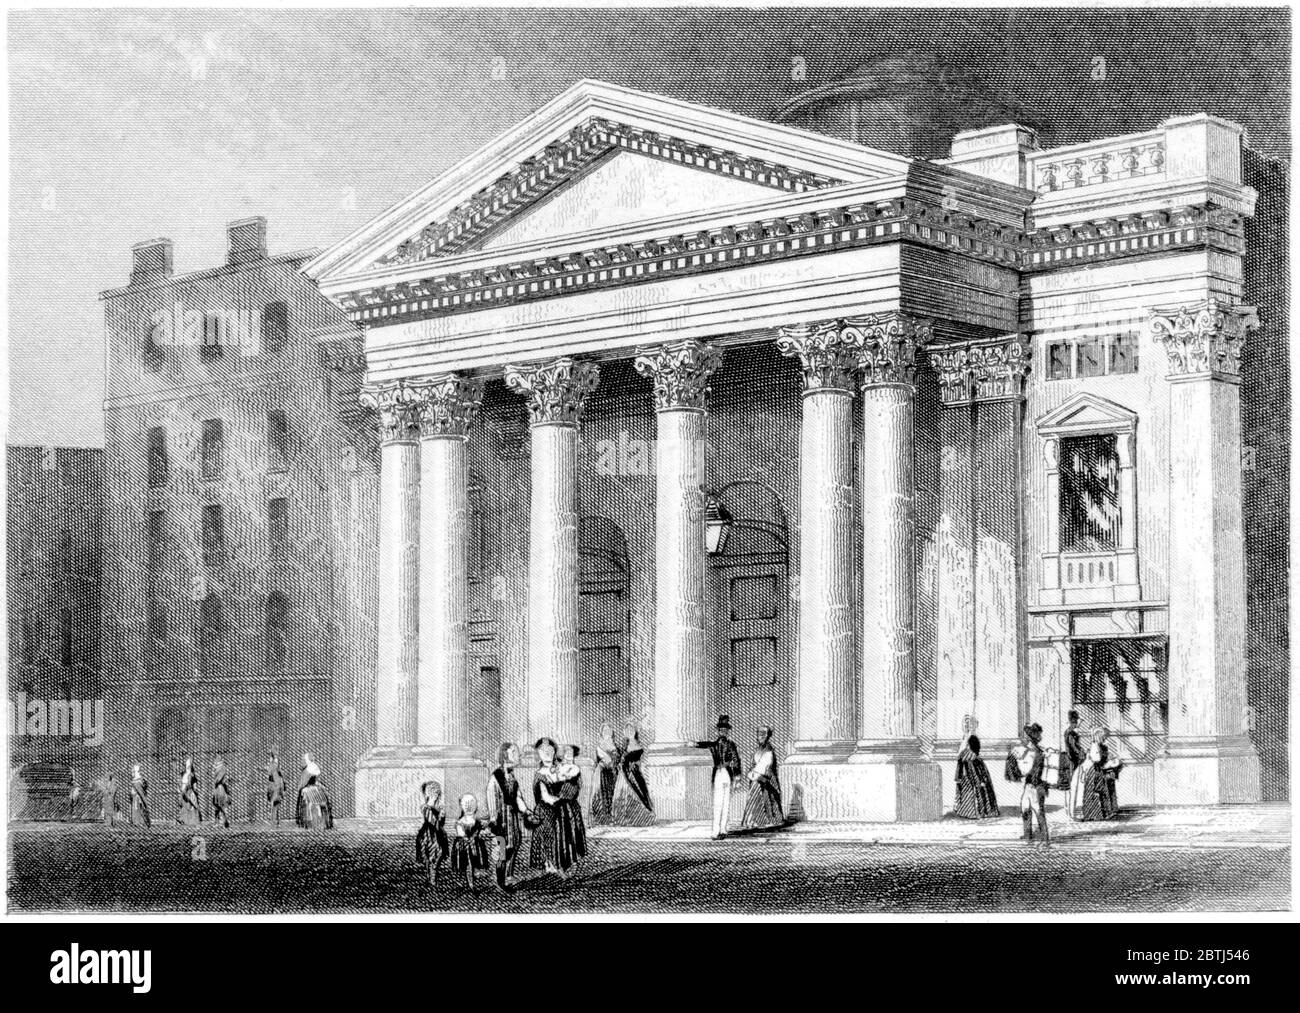 Ein Stich des Lyceum Theatre London, gescannt in hoher Auflösung aus einem 1851 gedruckten Buch. Dieses Bild ist frei von jegl. Copyright. Stockfoto